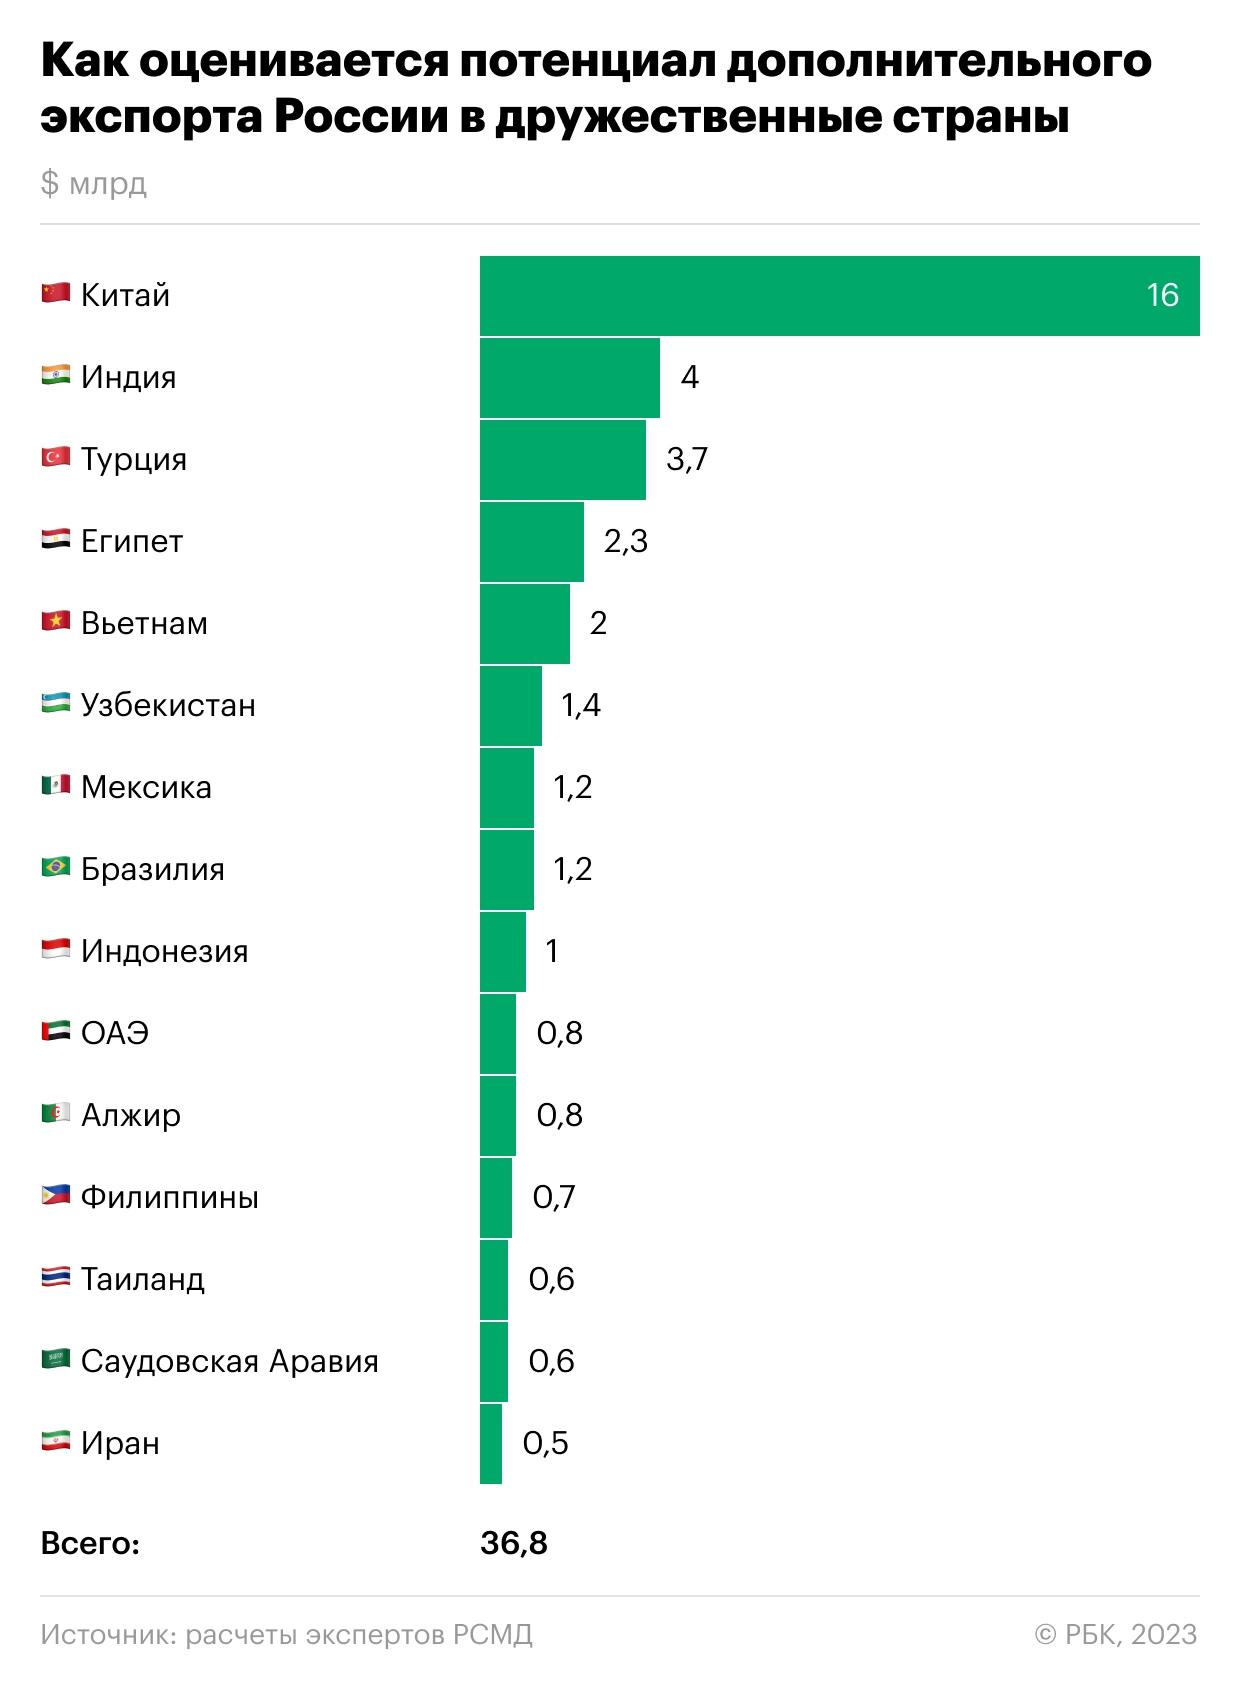 
                    Сколько может заработать Россия от экспорта вне Запада. Инфографика

                